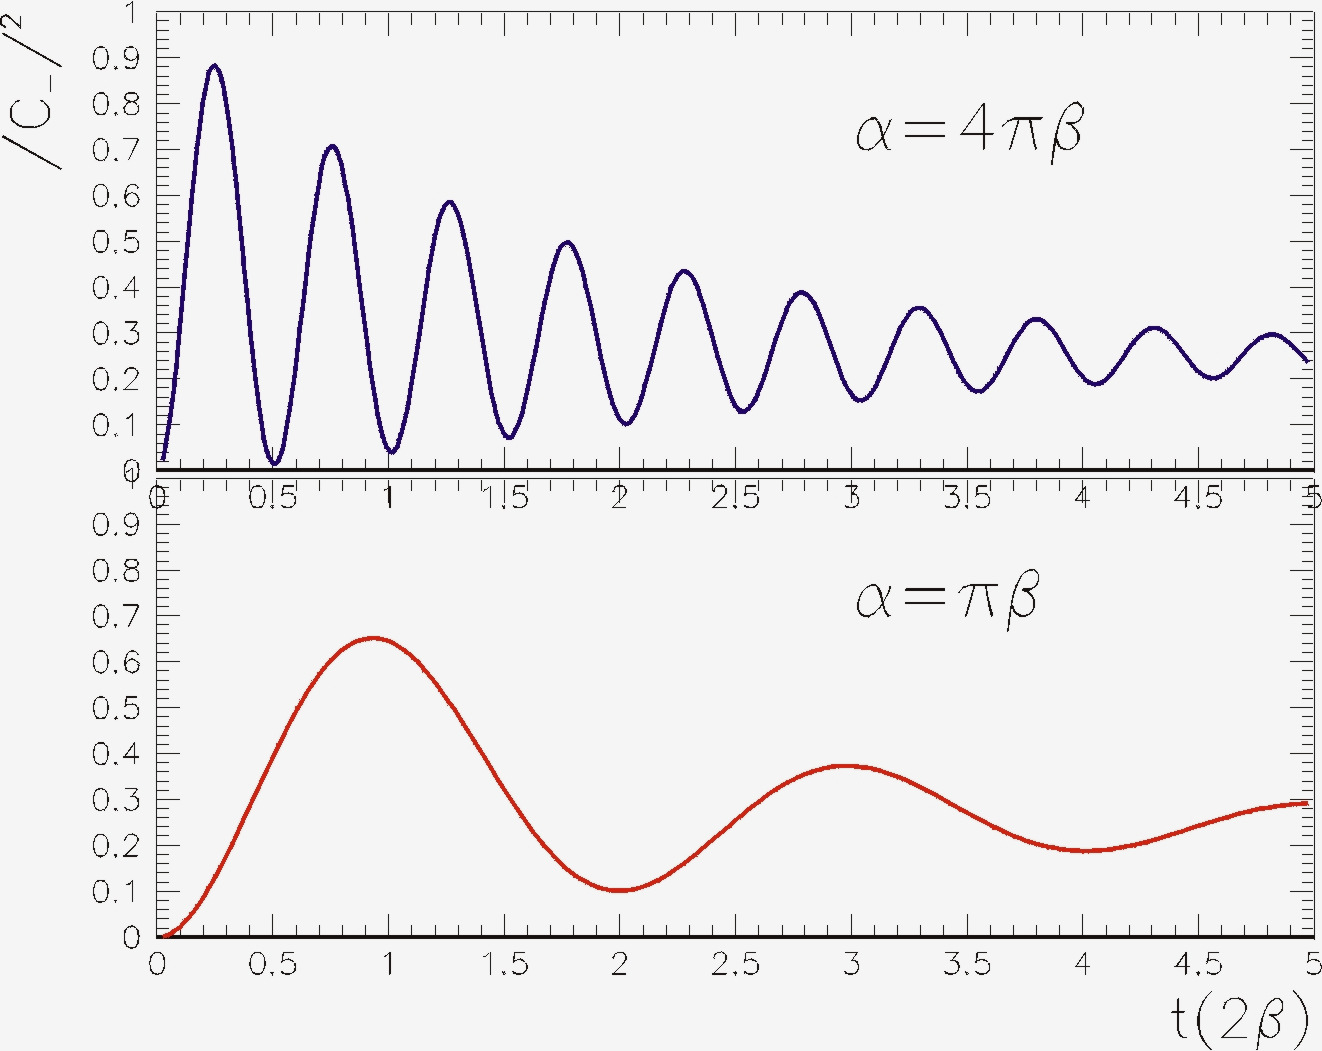 98 Στο σχήµα βλέπουµε τη συνάρτηση της σχέσης (5) για δύο διαφορετικές τιµές α Η µορφή εξαρτάται από το λόγο των σταθερών α / β. Αρχικά δεν υπάρχει πιθανότητα για το K.